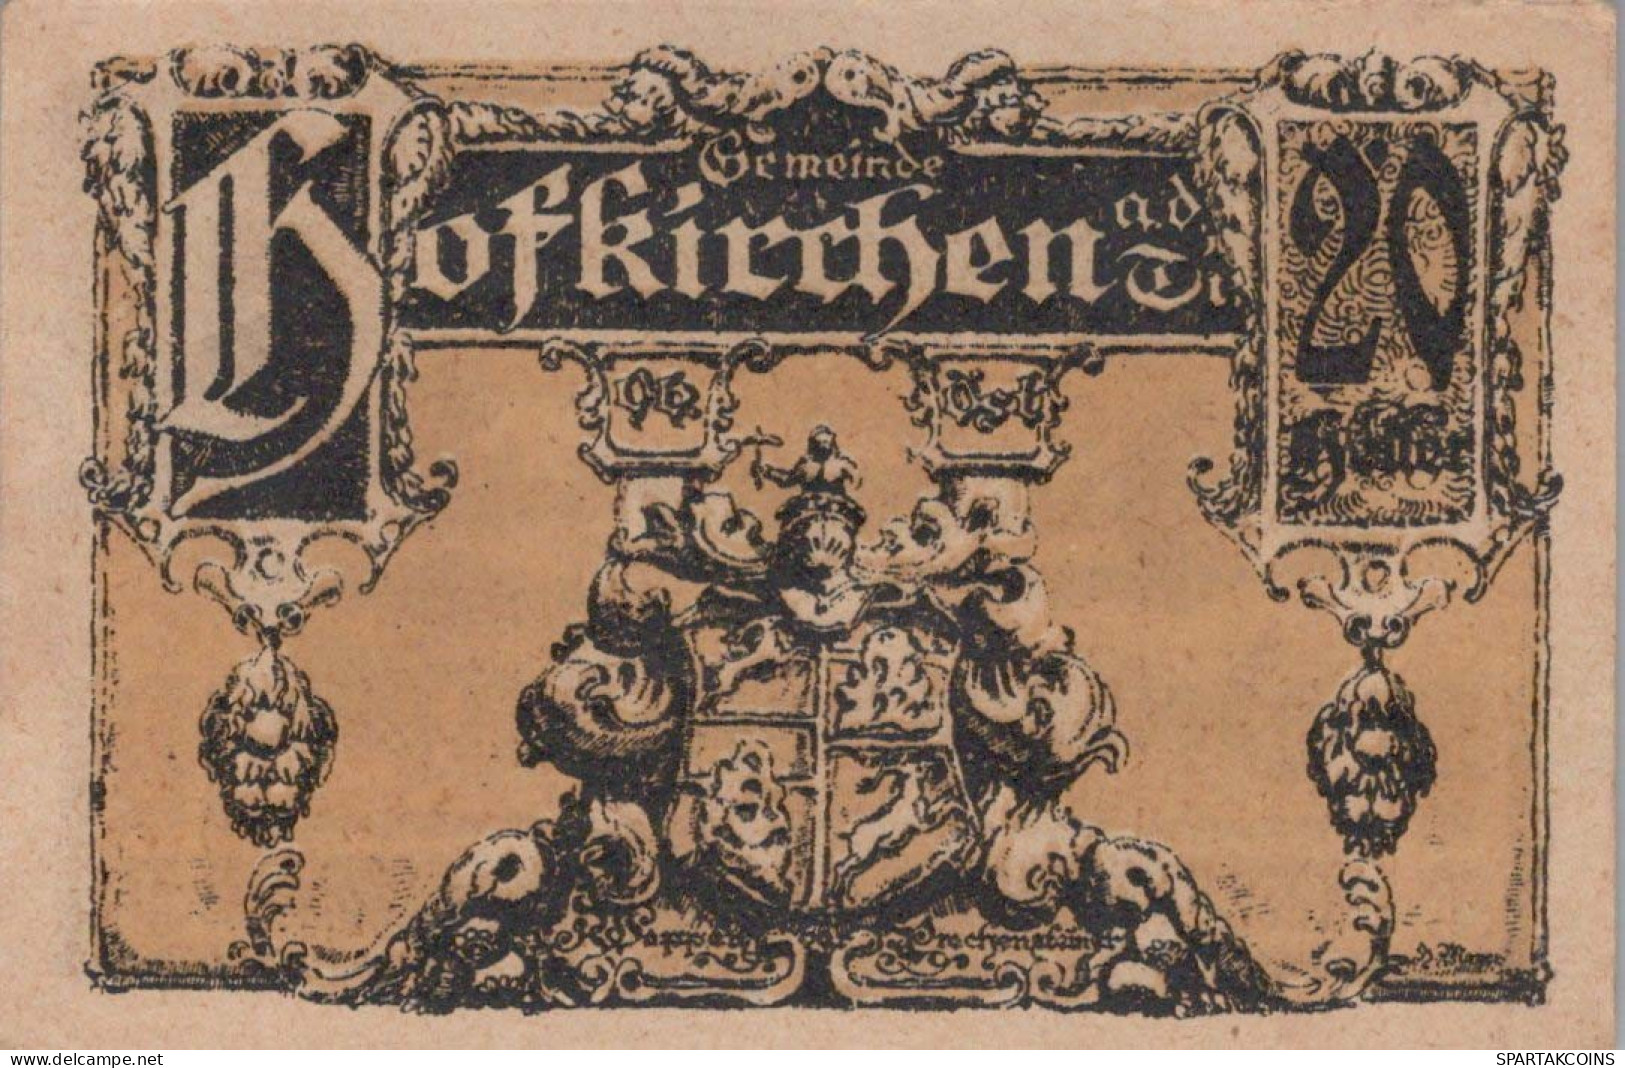 20 HELLER 1920 Stadt HOFKIRCHEN IM MÜHLKREIS Oberösterreich Österreich Notgeld Papiergeld Banknote #PG854 - [11] Local Banknote Issues